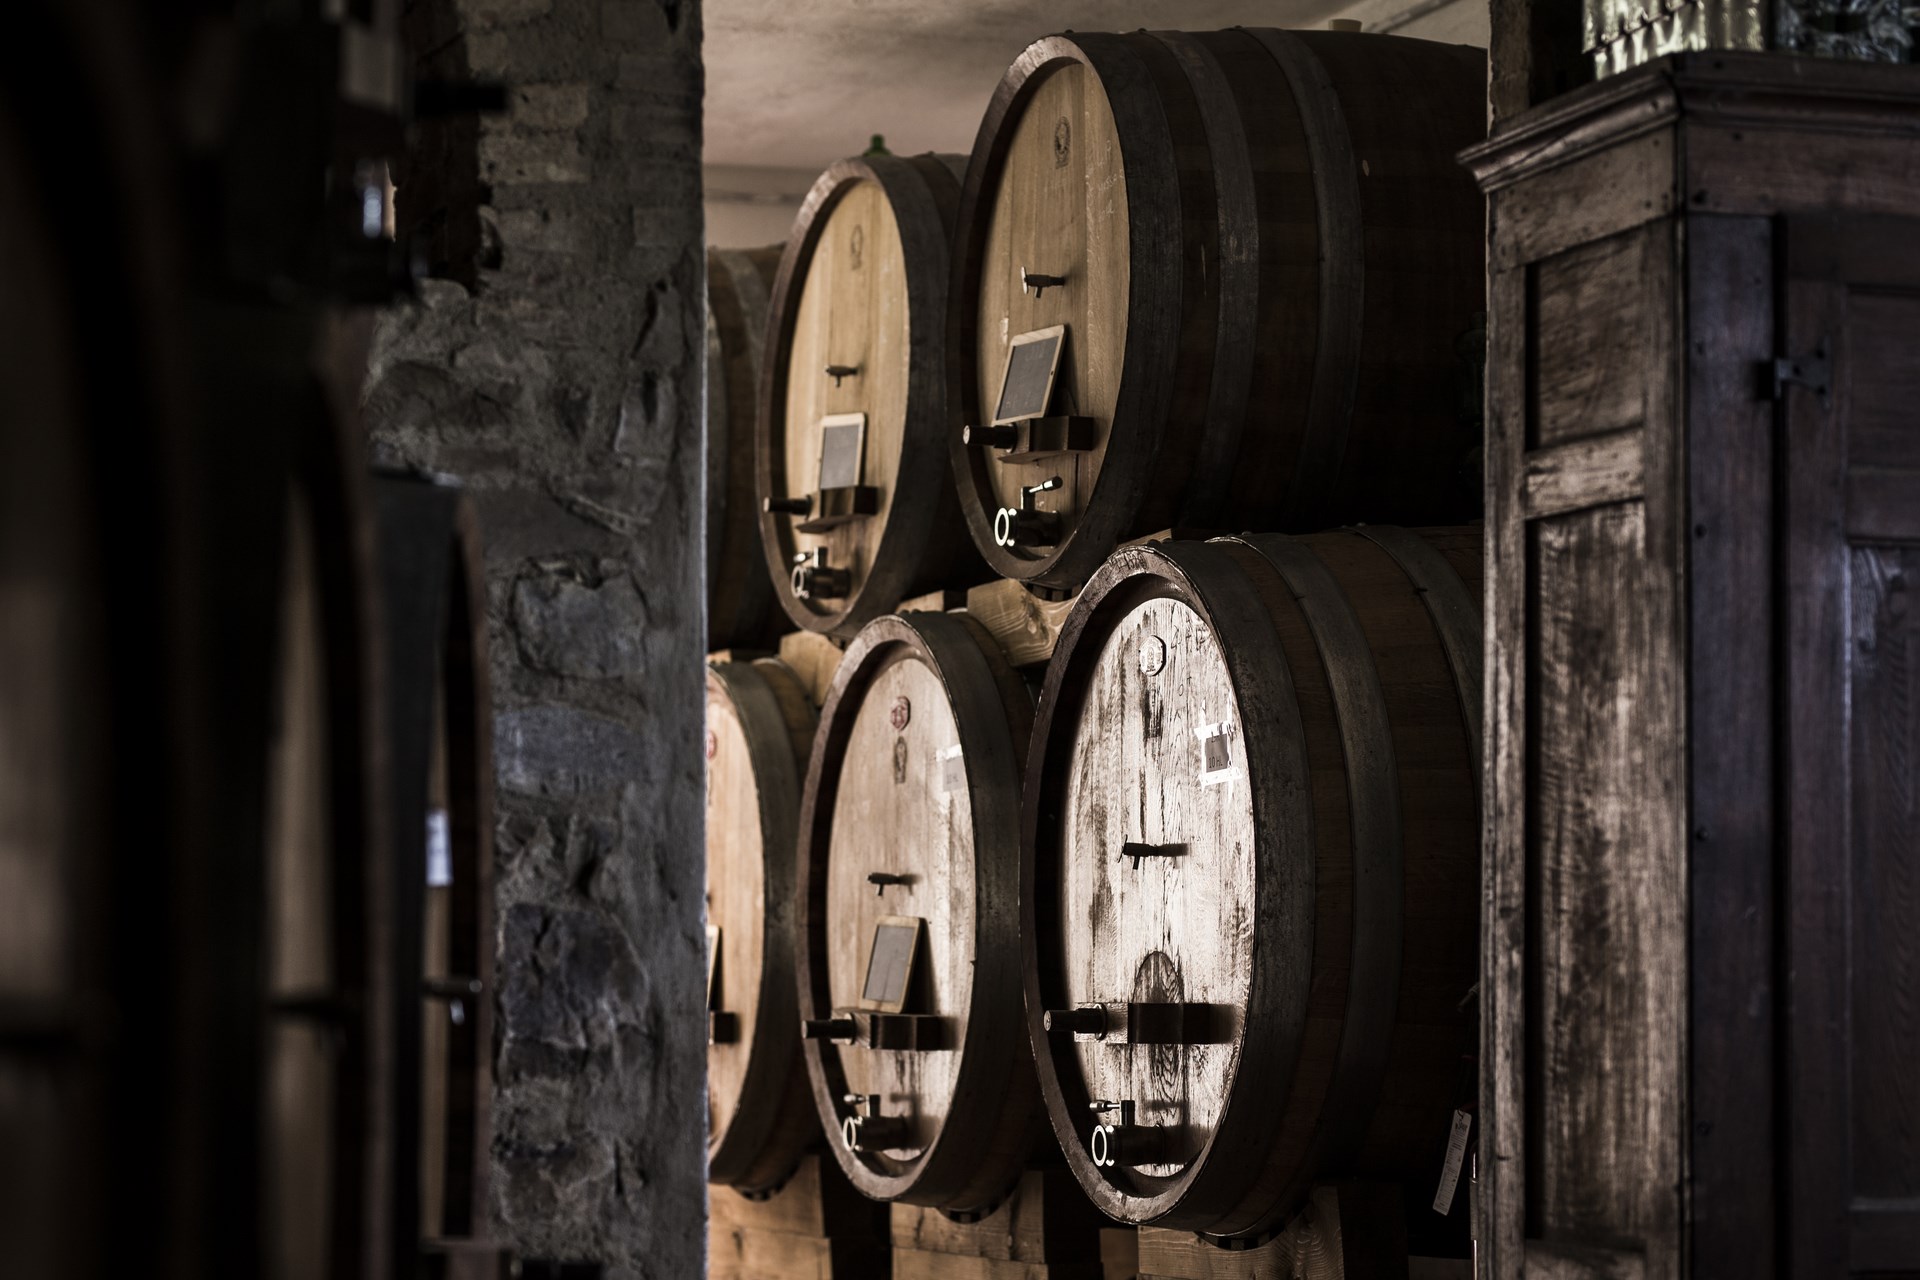 La Palazzetta winery